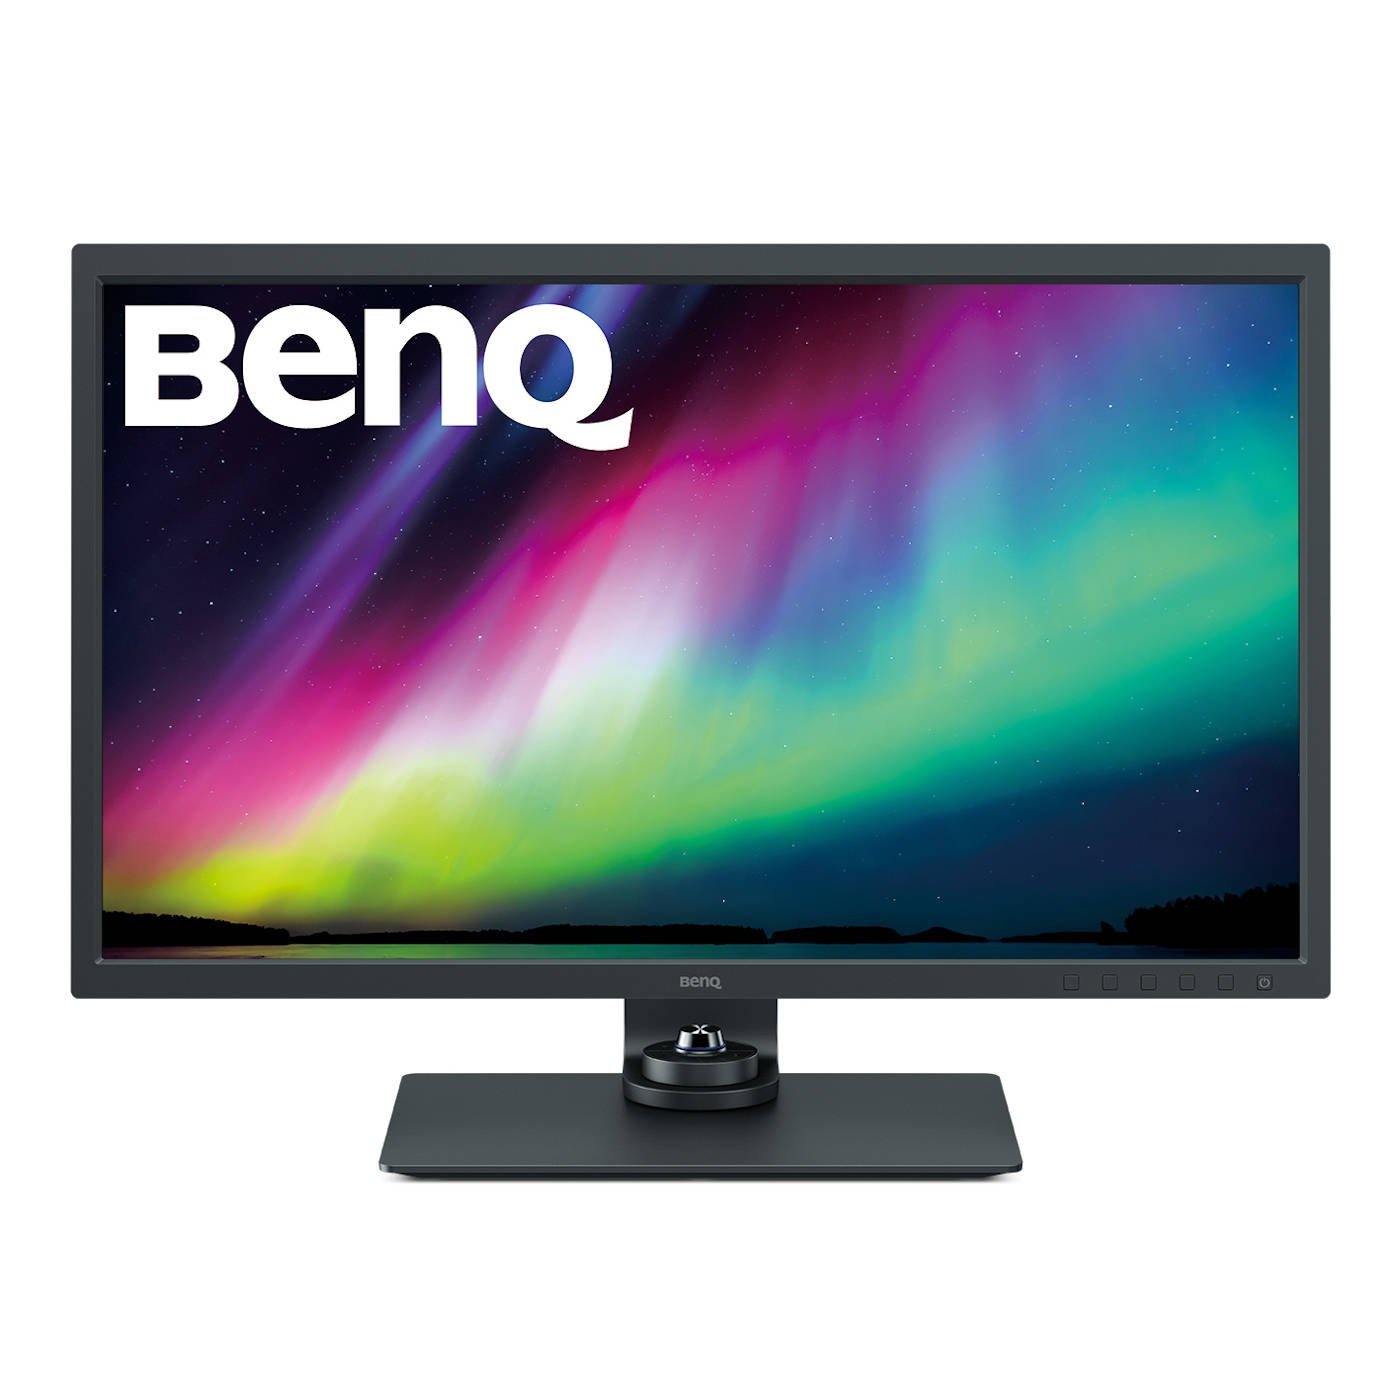 Immagine di Benq SW321C, il nuovo monitor professionale 4K HDR dal prezzo contenuto